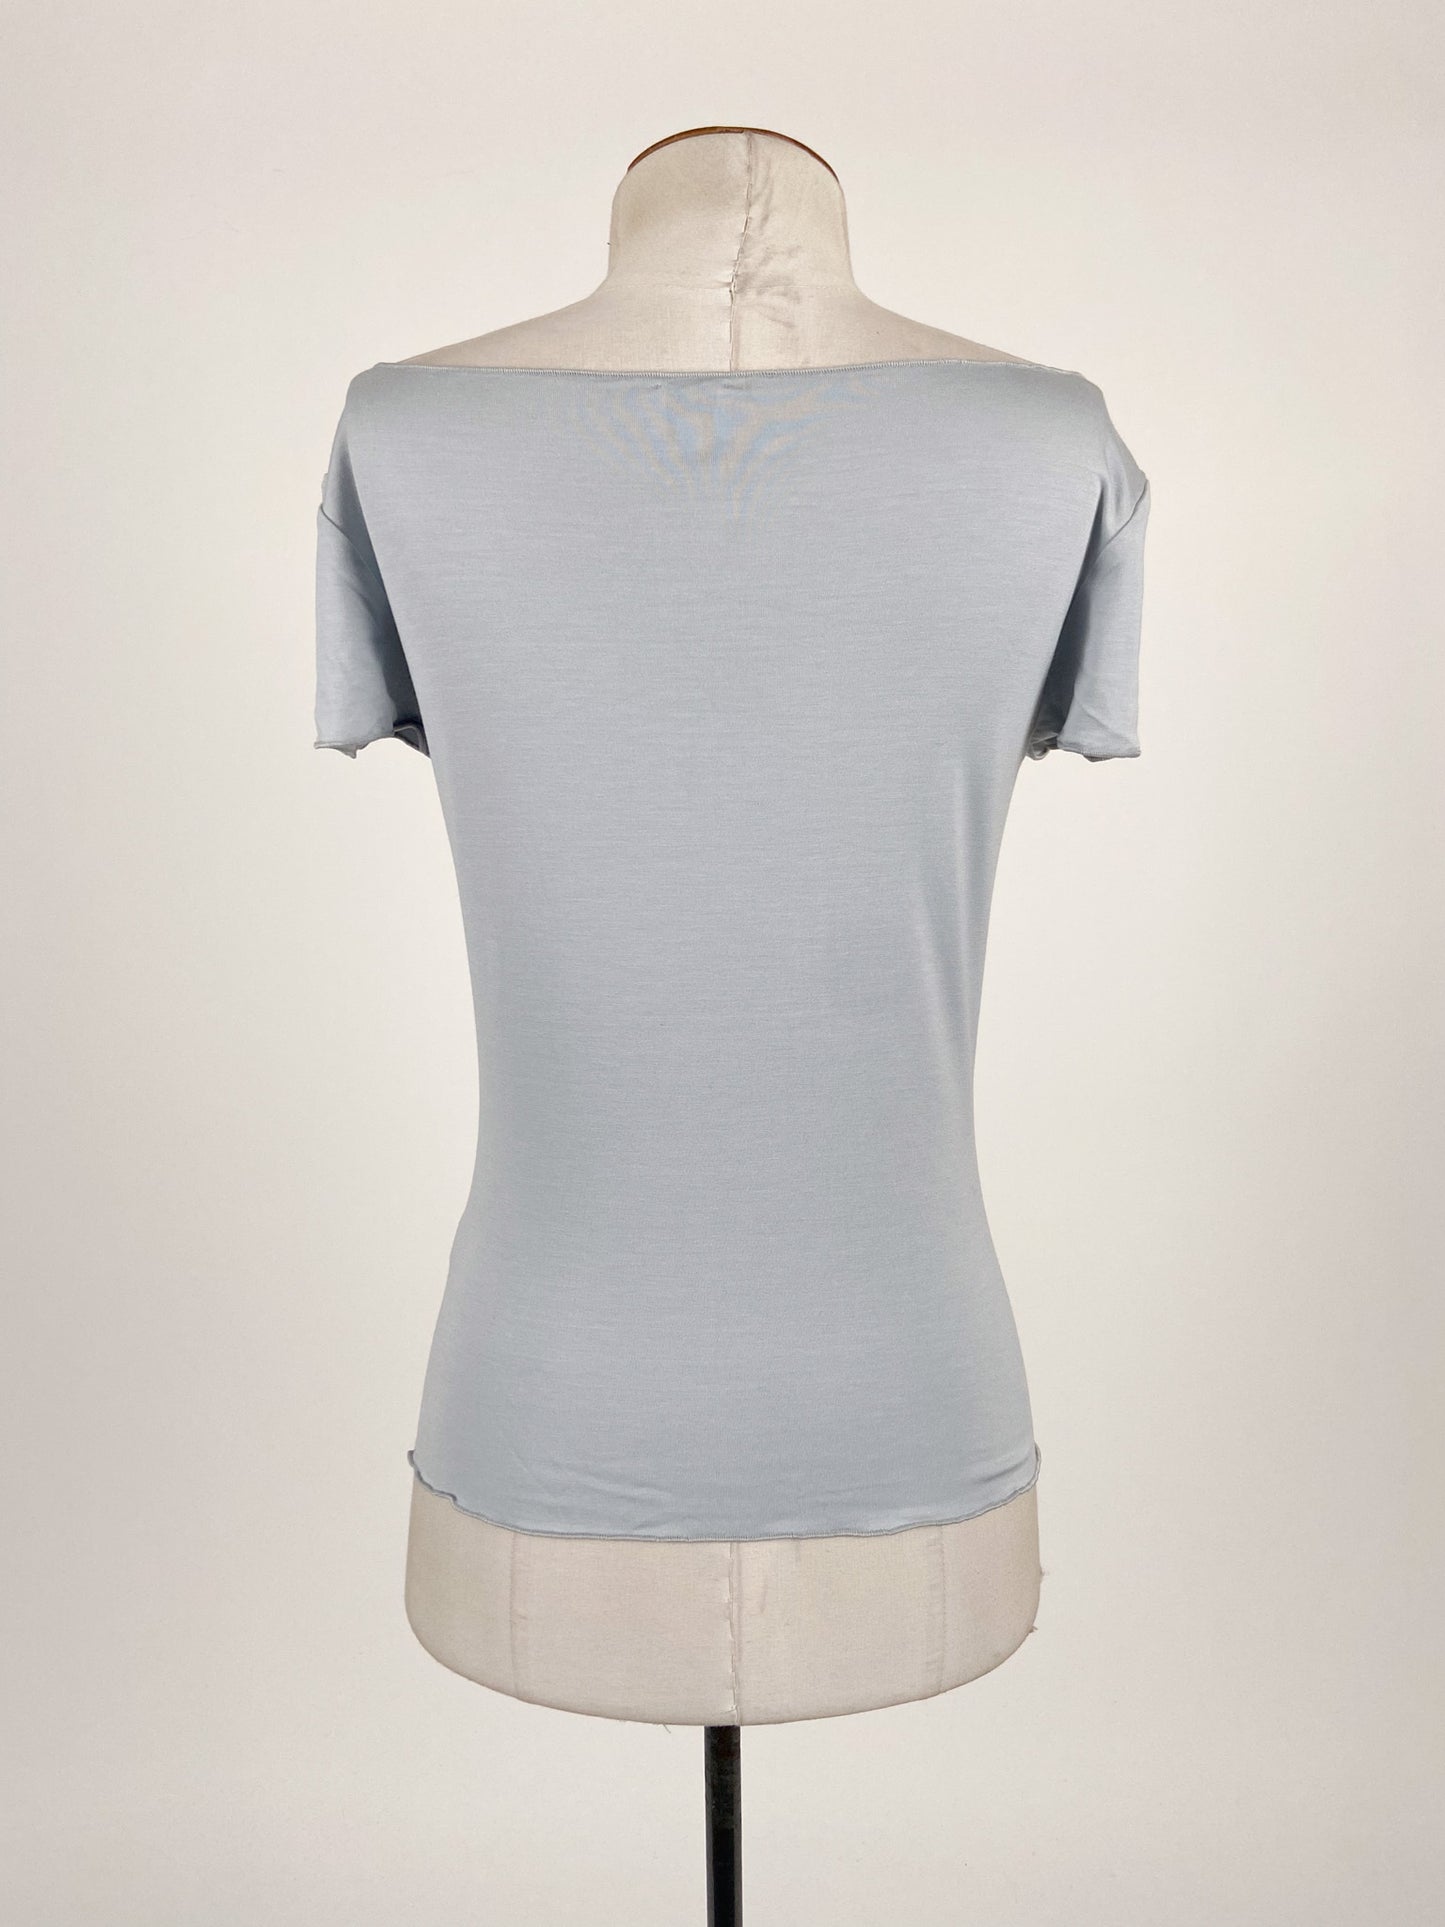 Armani | Blue Casual/Workwear Top | Size M